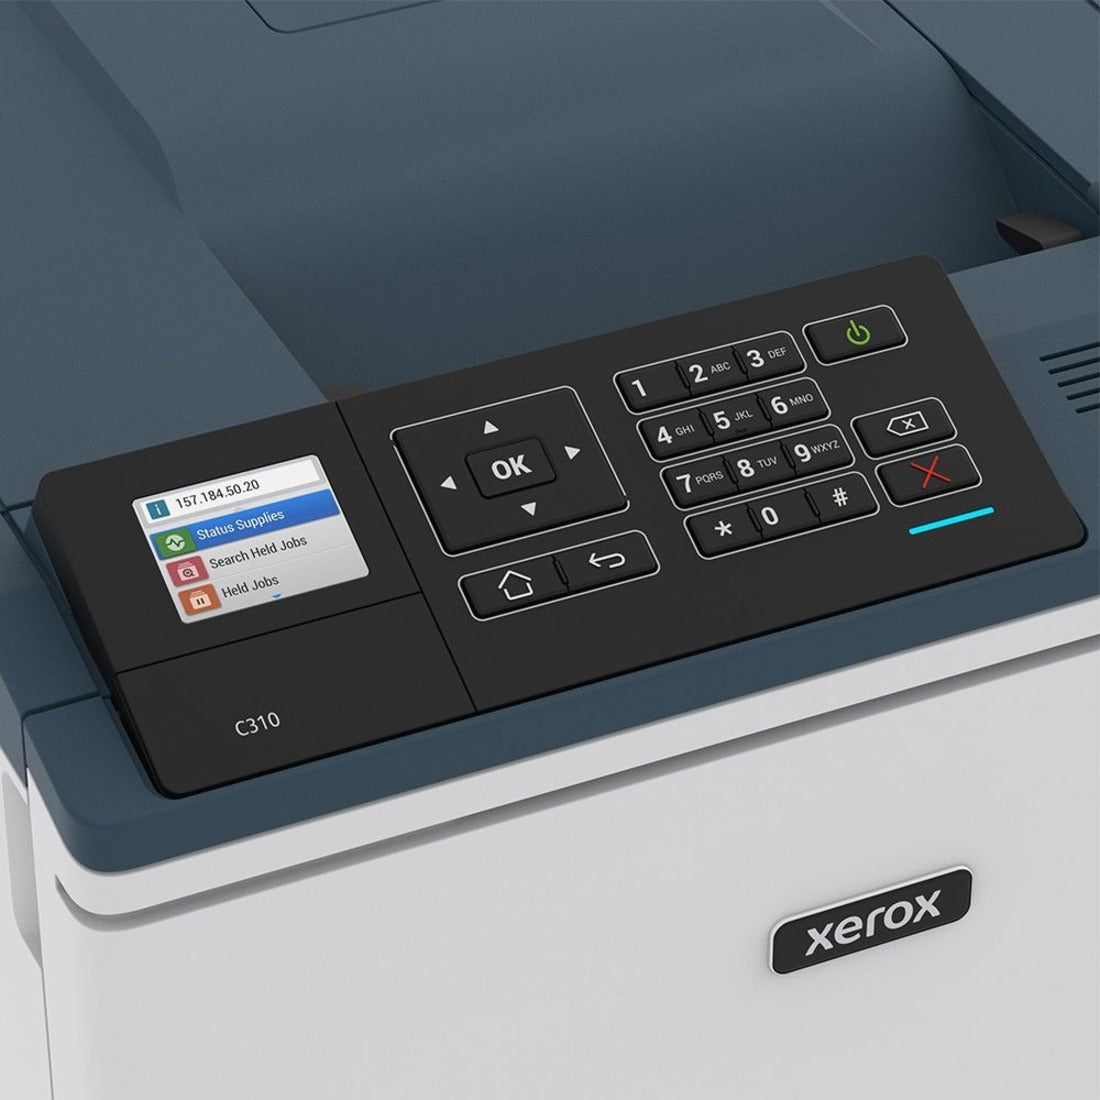 Xerox C310/DNI Impresora láser a color C310 inalámbrica impresión a doble cara automática 35 ppm 1200 x 1200 ppp